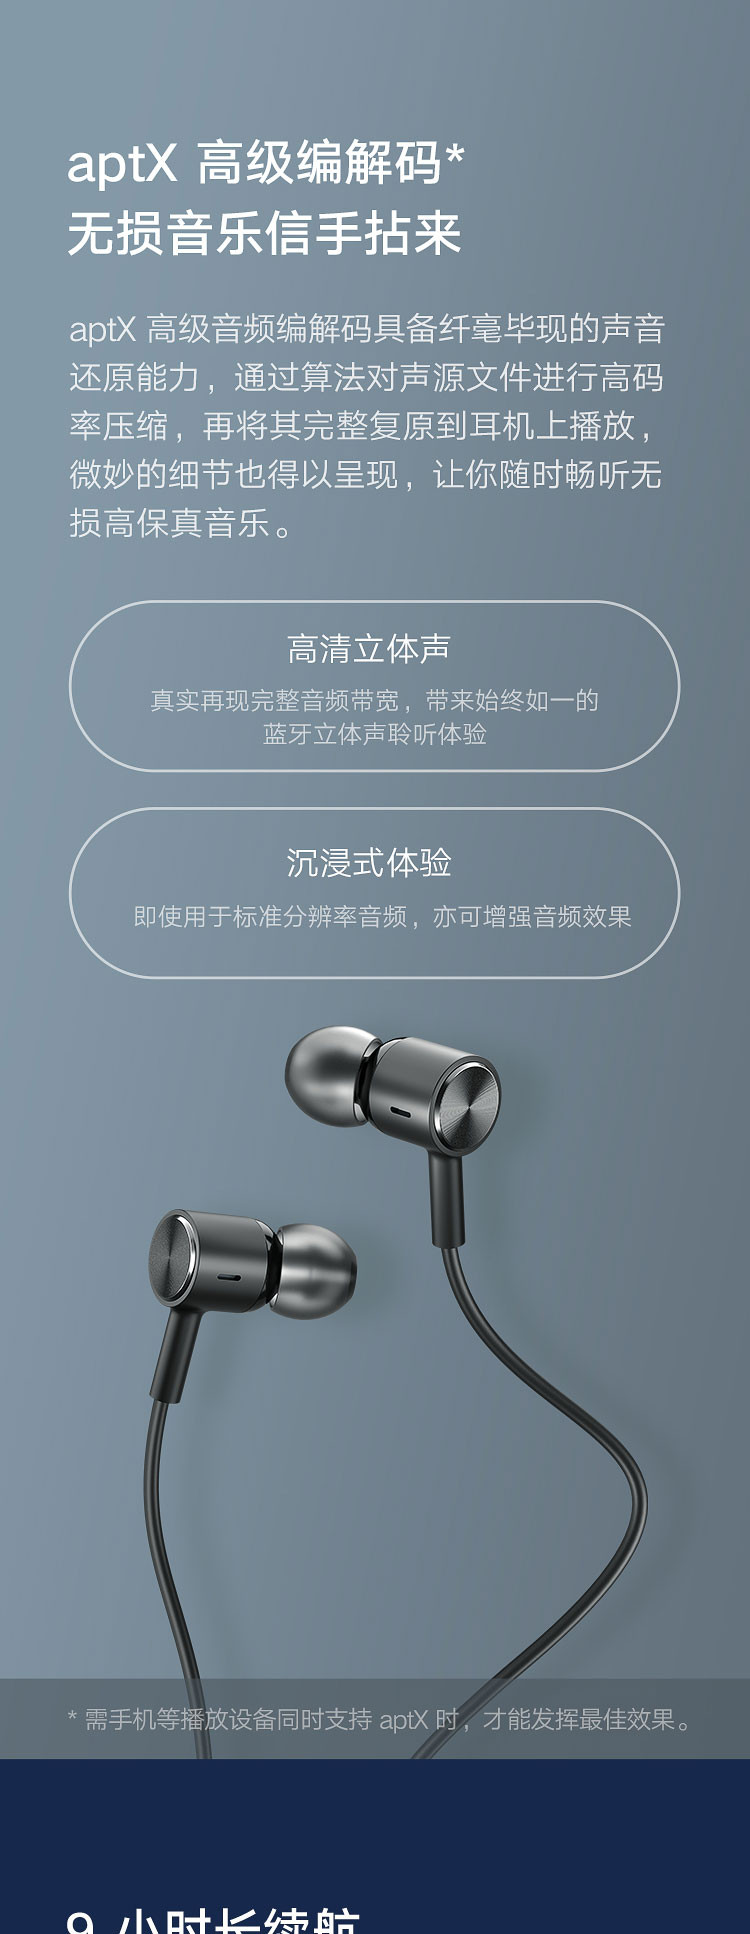 小米/MIUI 蓝牙耳机Line Free  项圈耳机 双动圈 蓝牙5.0 人体工学佩戴